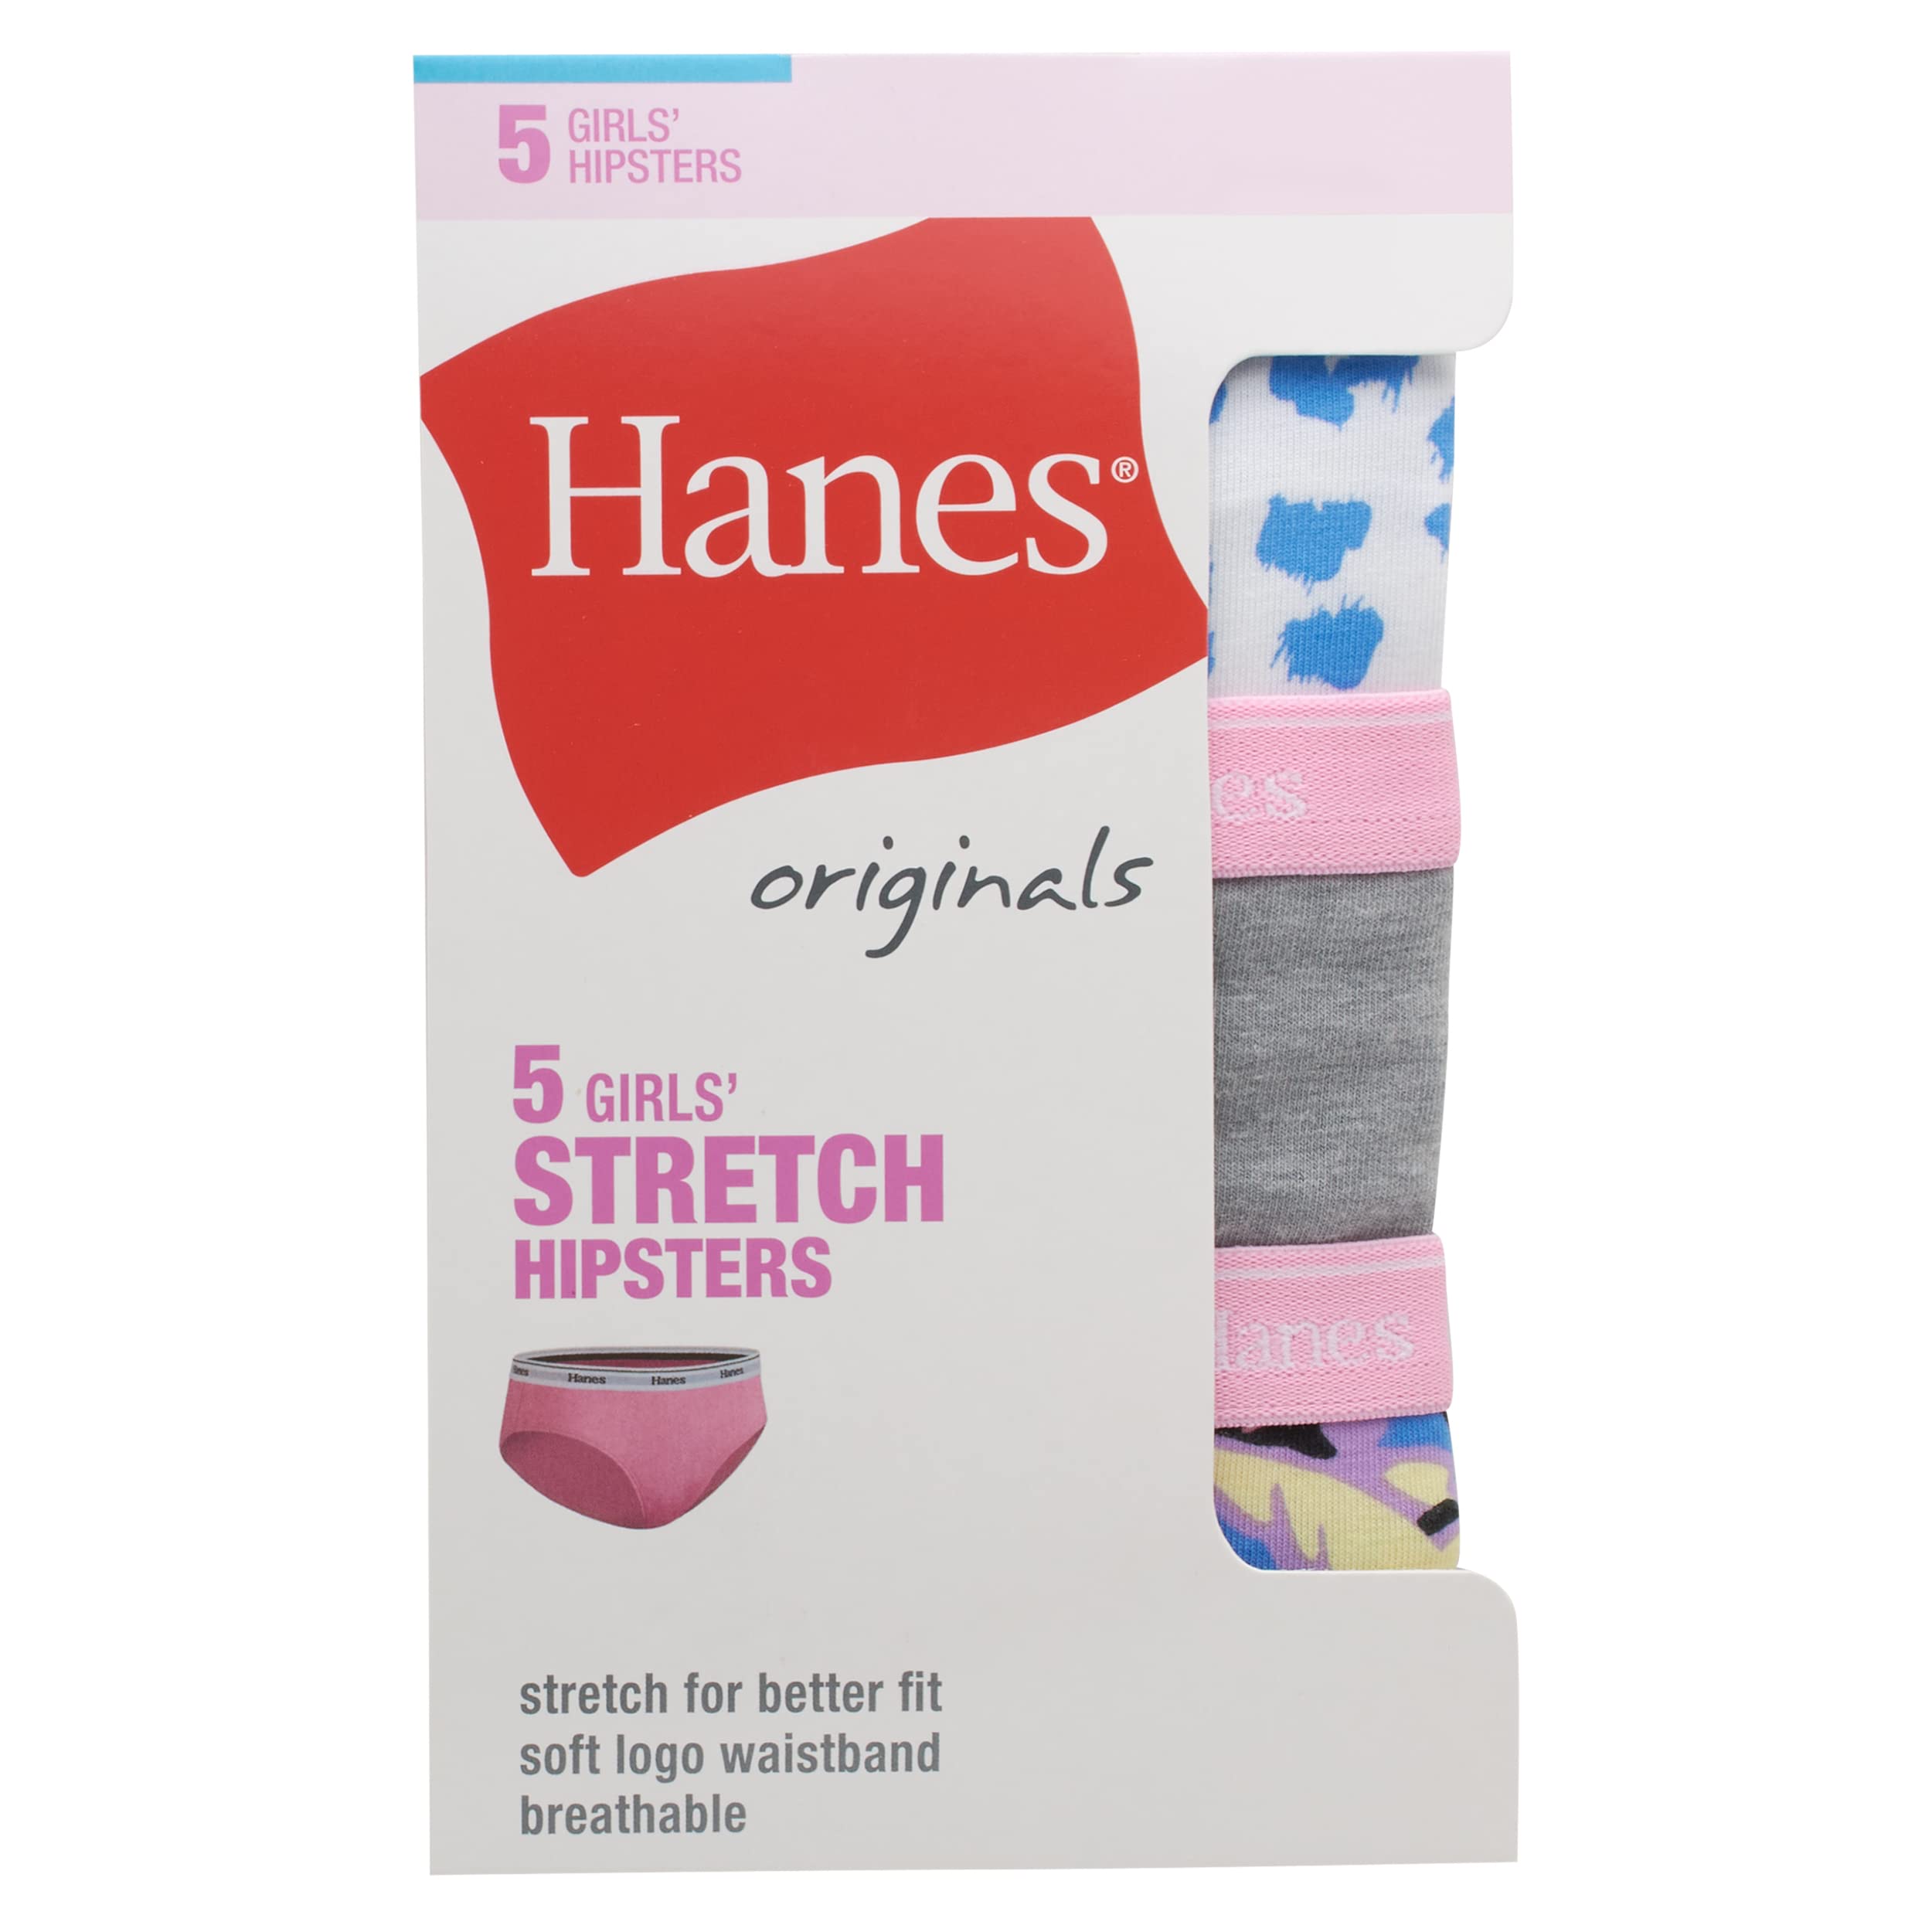 Hanes Originals Girls Boyshorts & Hipsters, Moisture-Wicking Cotton Stretch Underwear, Assorted 5-Pack